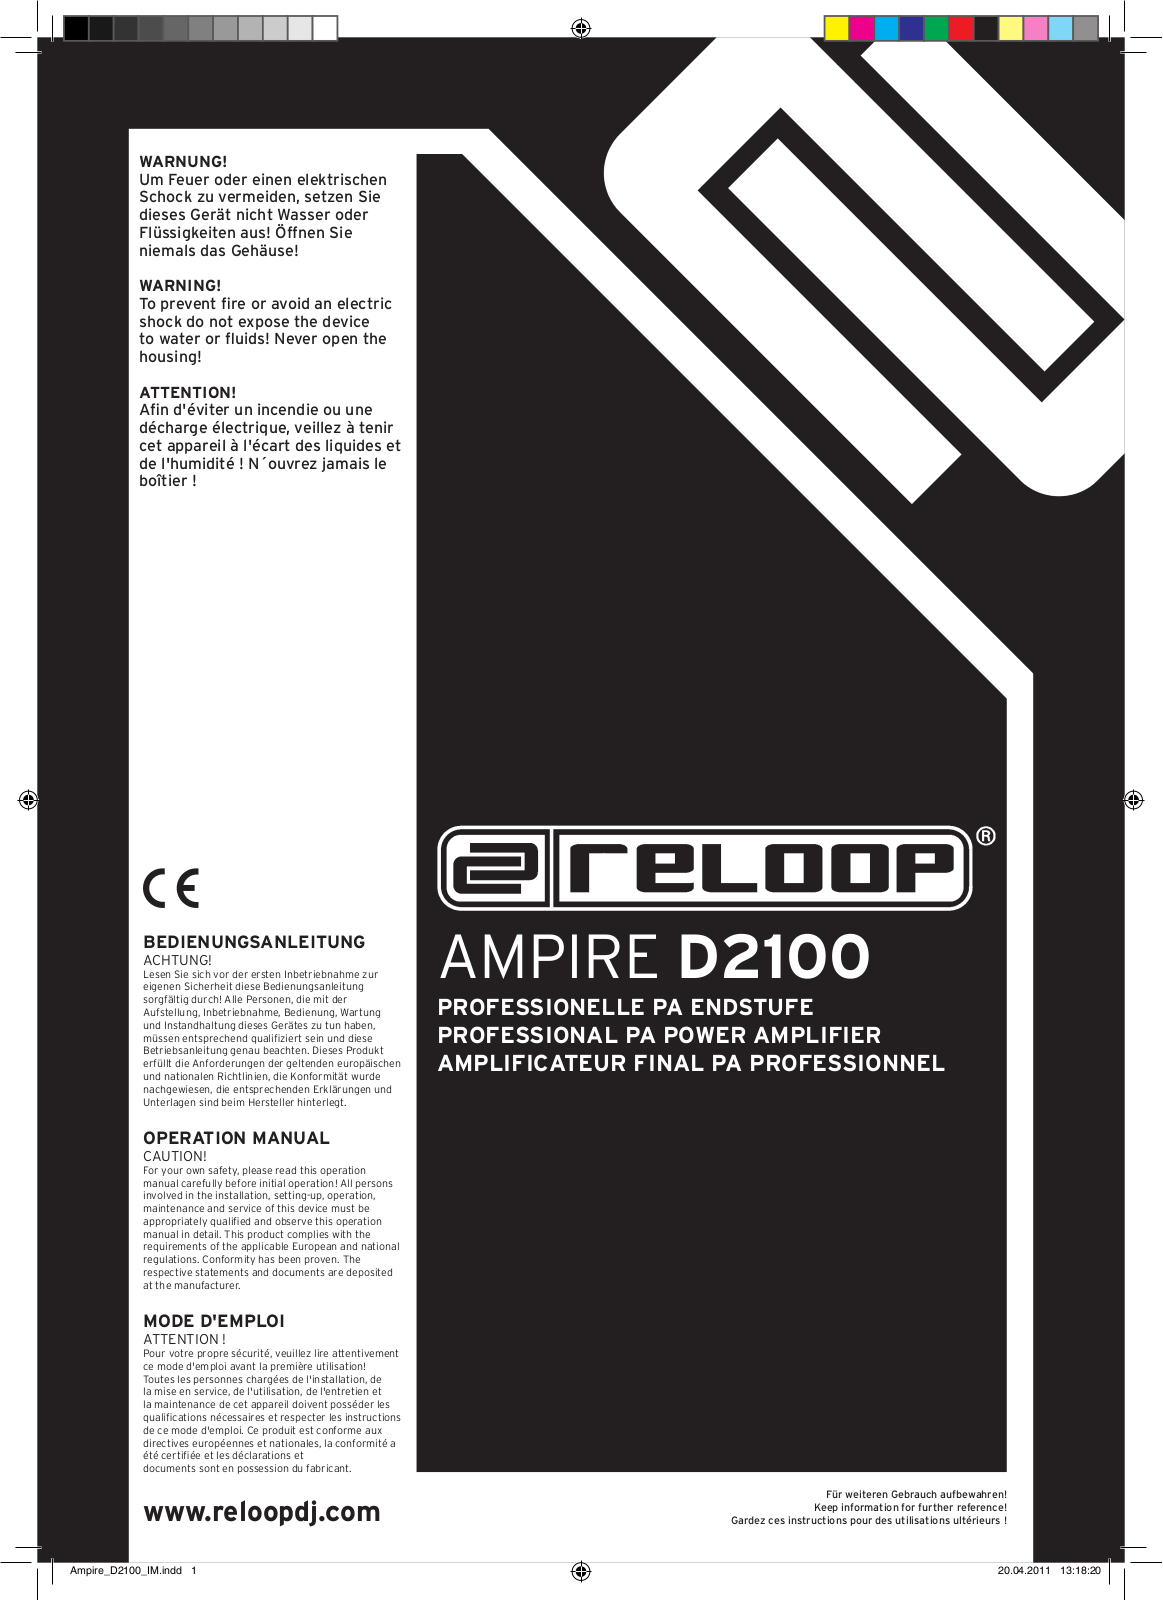 Reloop D2100 User Manual